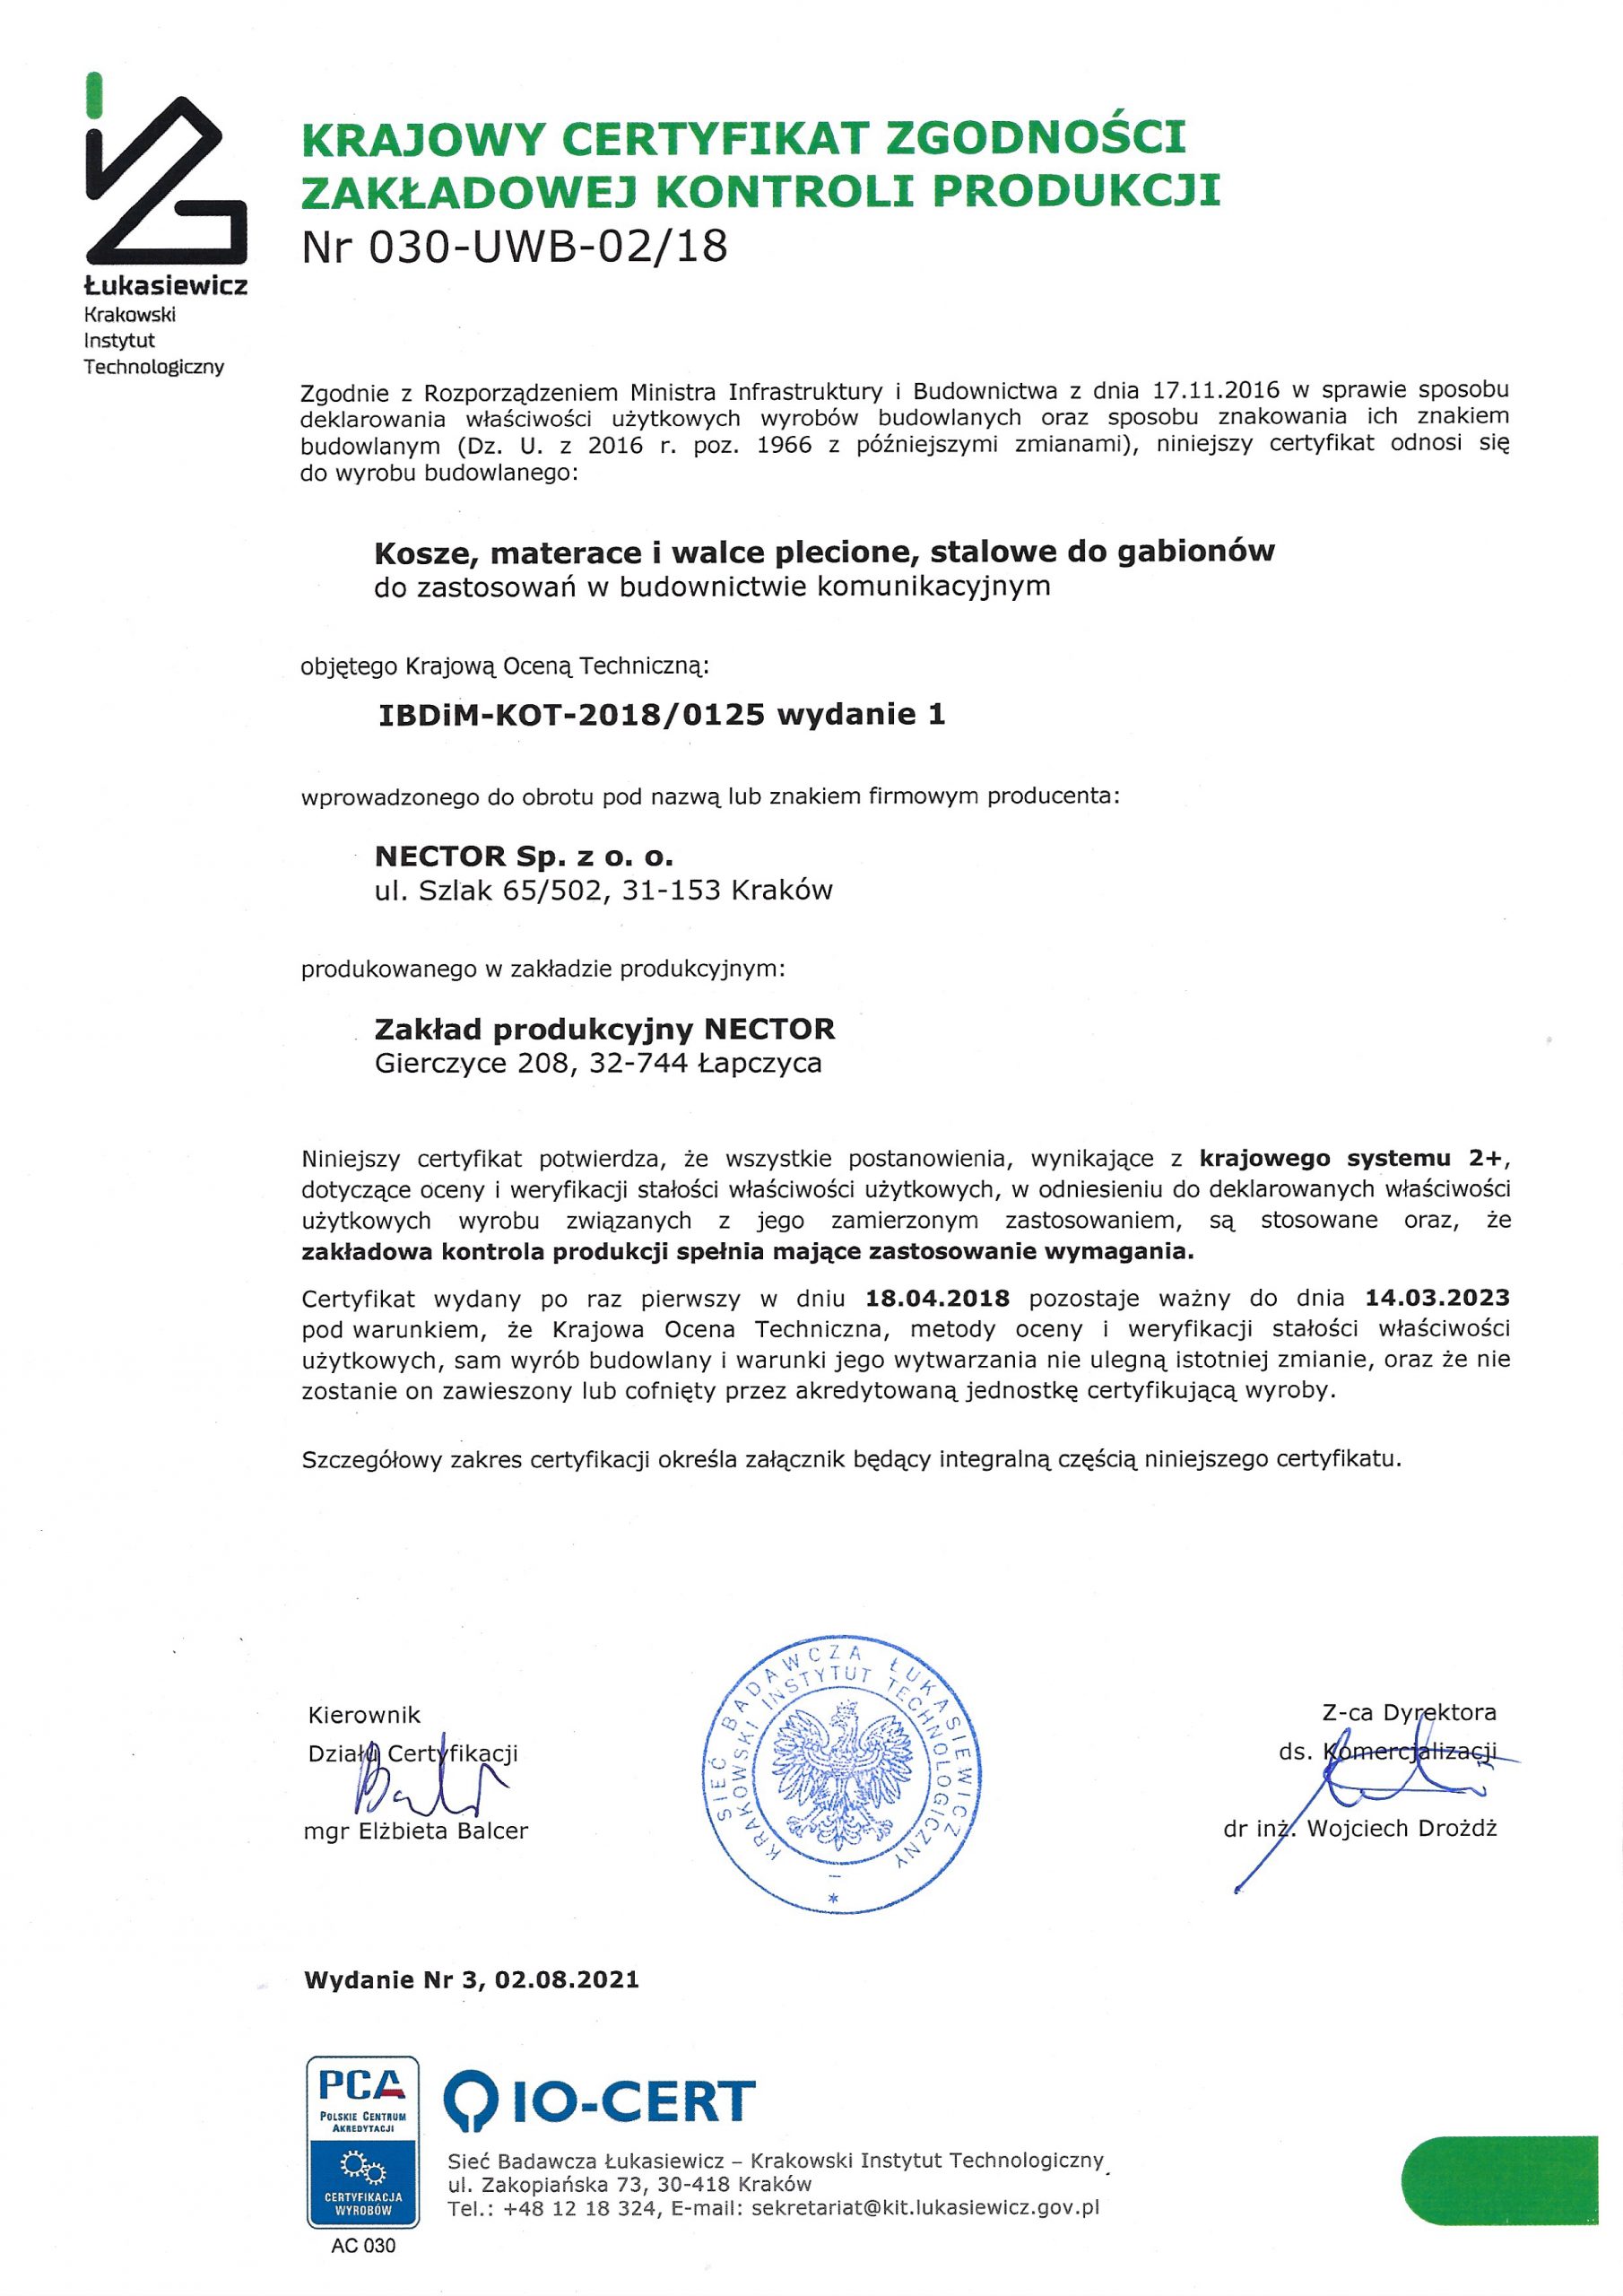 Krajowy Certyfikat Zgodności Zakładowej Kontroli Produkcji nr 030-UWB-02/18